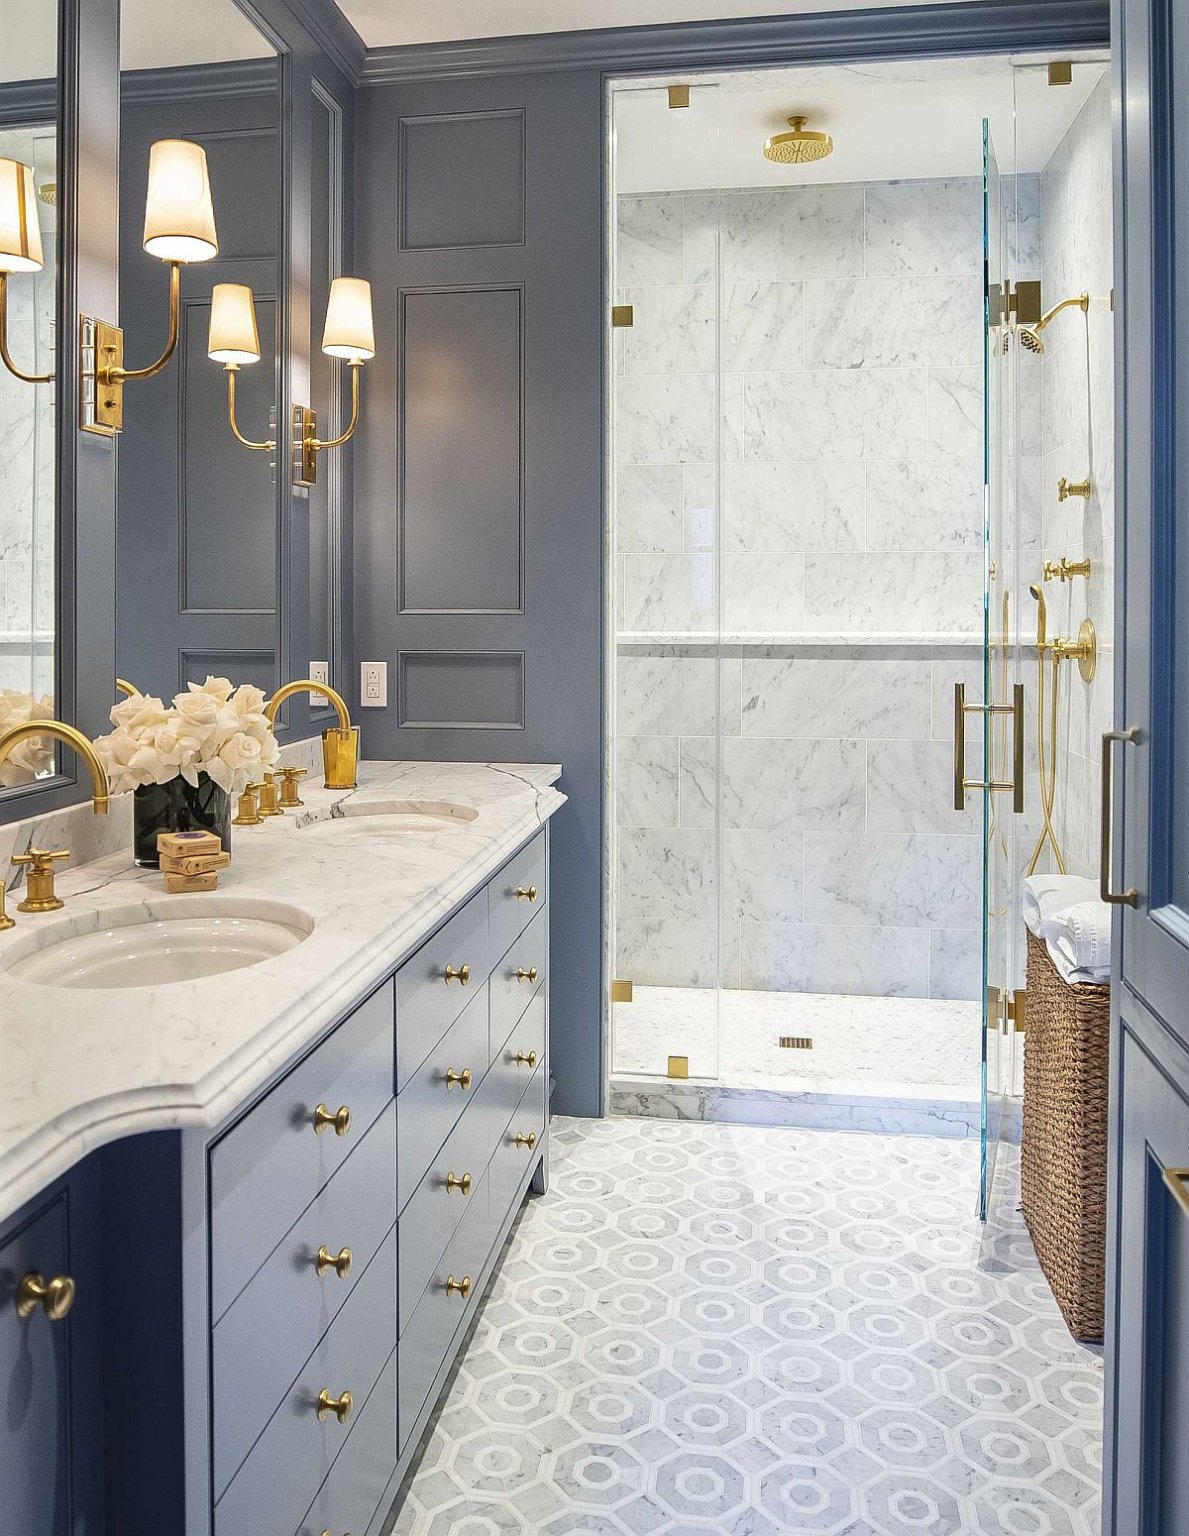 Hình ảnh phòng tắm với tủ ngăn kéo màu xanh xám kết hợp phụ kiện màu đồng sáng bóng như tay nắm ngăn kéo, vòi rửa, đèn gắn tường